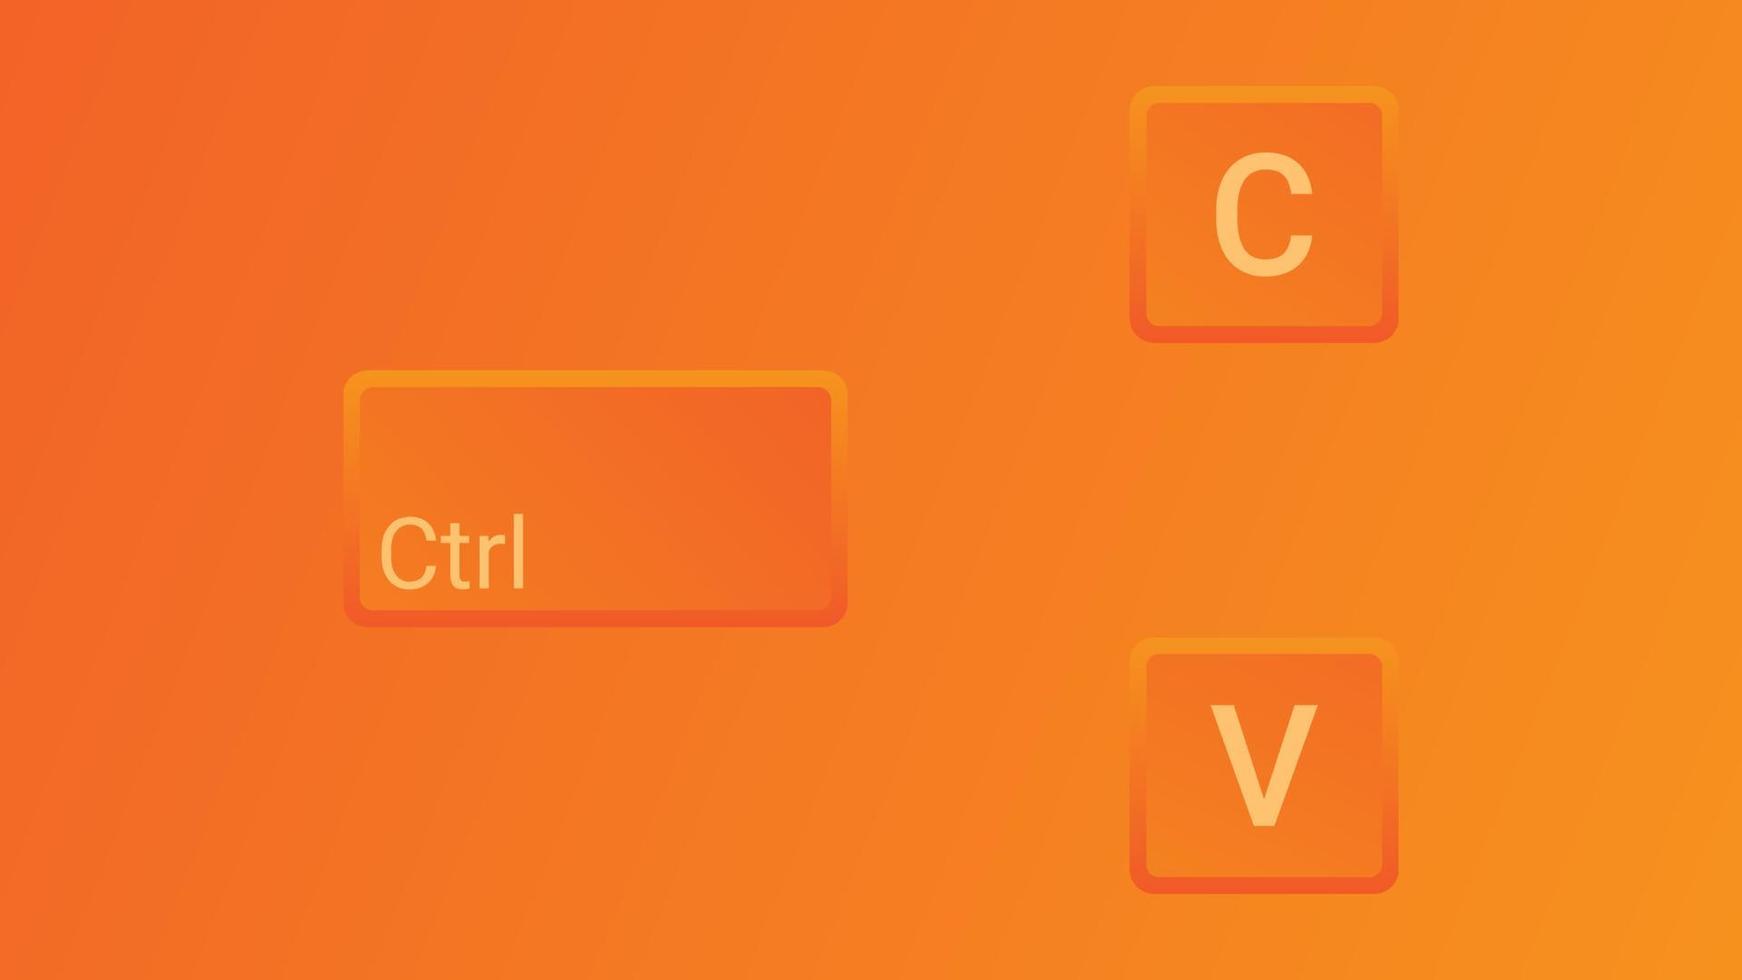 teclas del teclado ctrl cy ctrl v, copia y pega los atajos de teclas. icono de computadora sobre fondo naranja vector